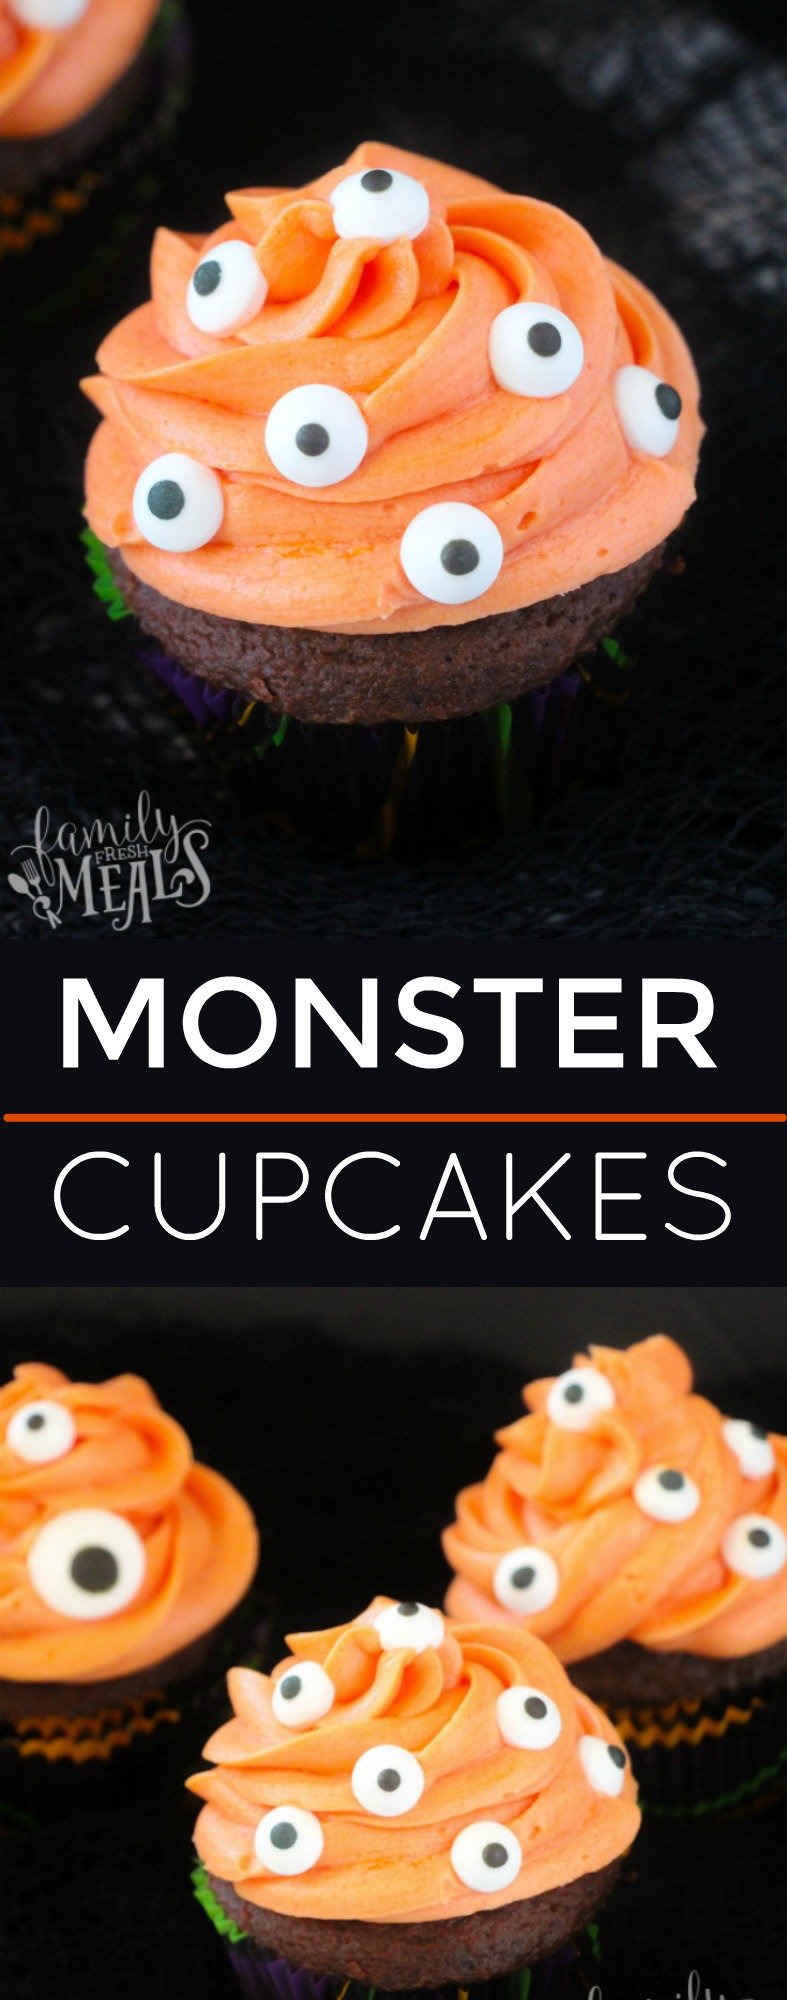 Monster Cupcakes - familyfreshmeals.com via @familyfresh